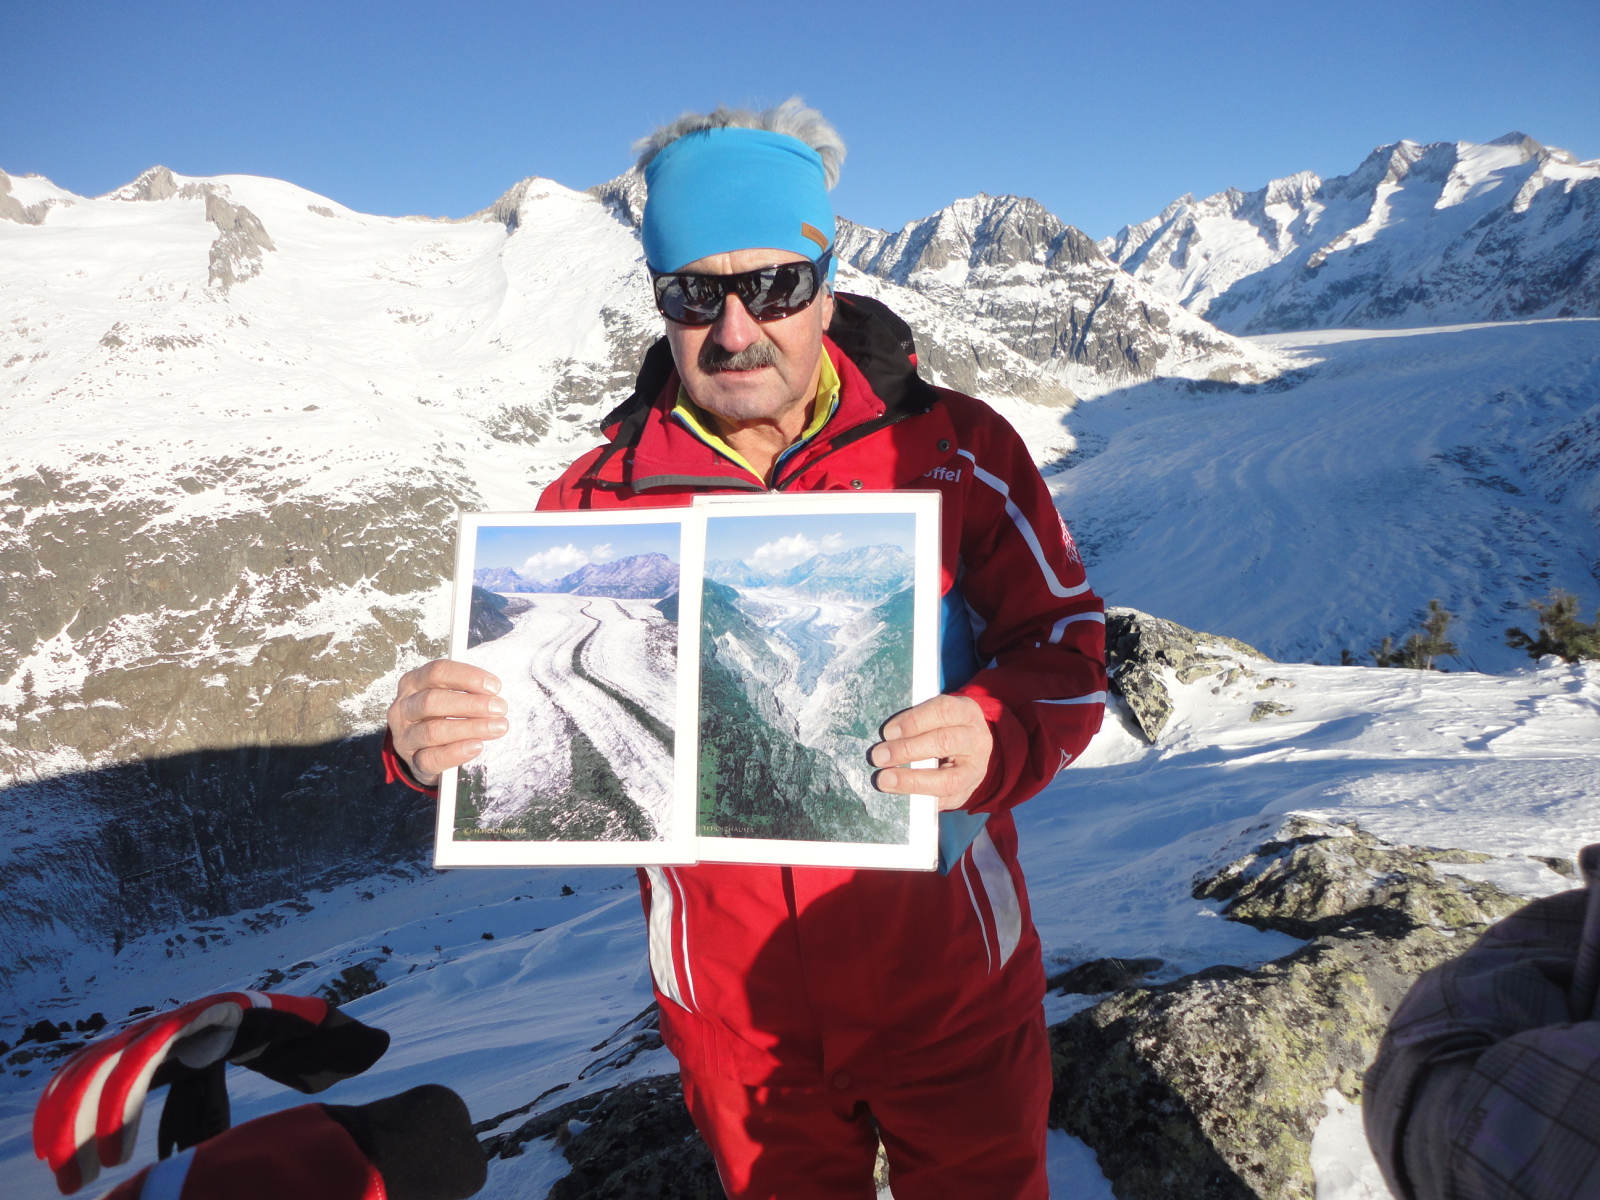 Ilyen volt és ilyen lett : túravezetőnk az Aletsch gleccser visszahúzódásáról beszél